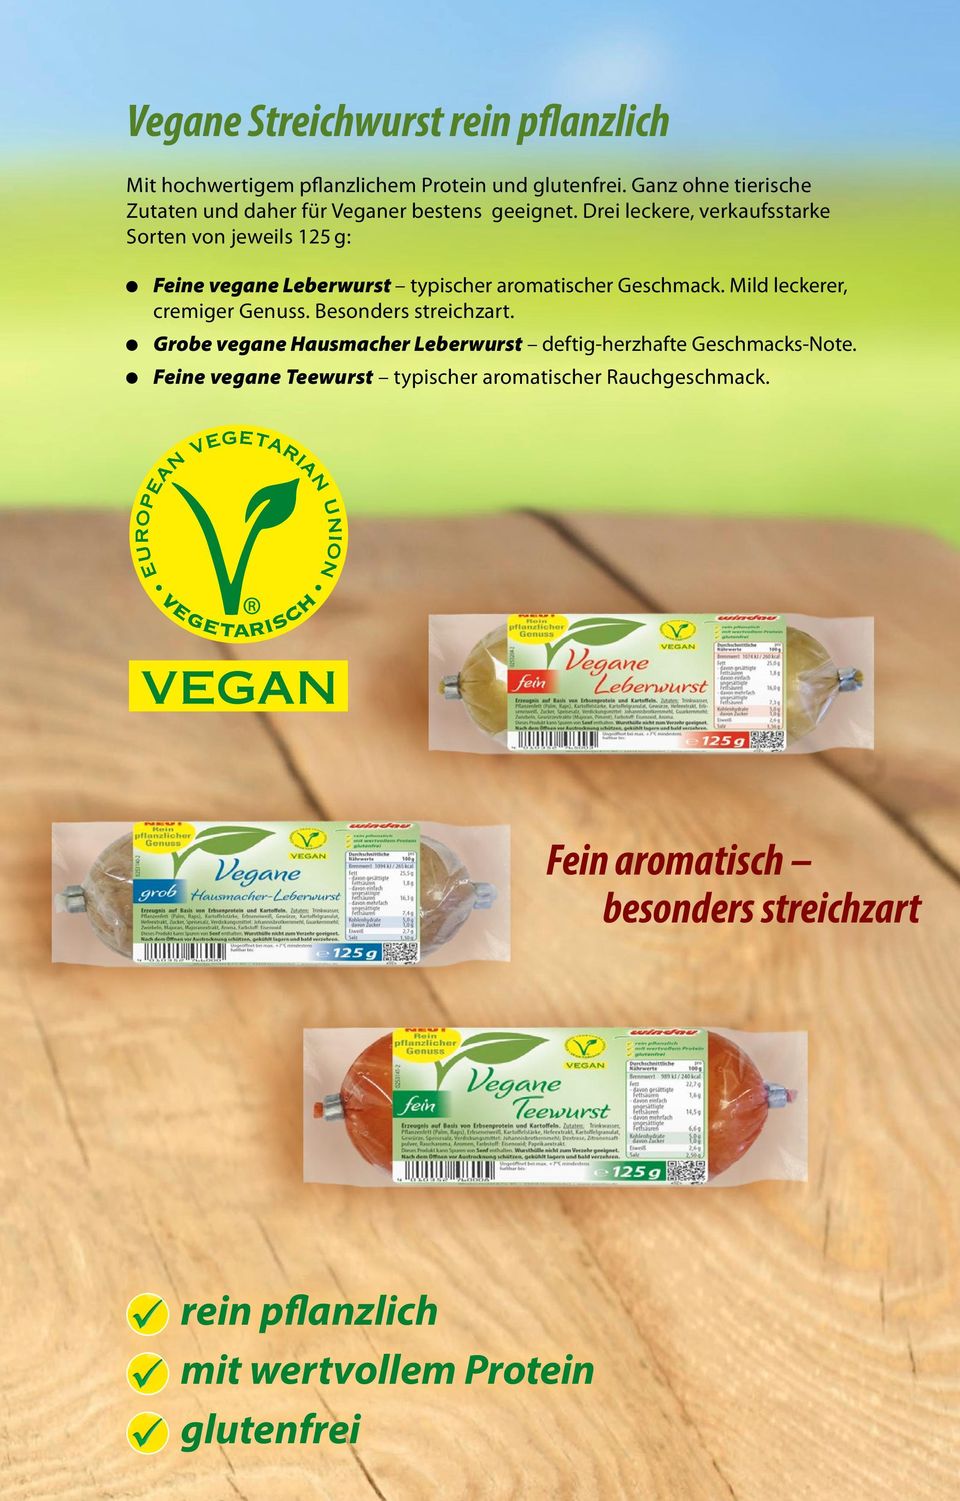 Drei leckere, verkaufsstarke Sorten von jeweils 125 g: Feine vegane Leberwurst typischer aromatischer Geschmack.